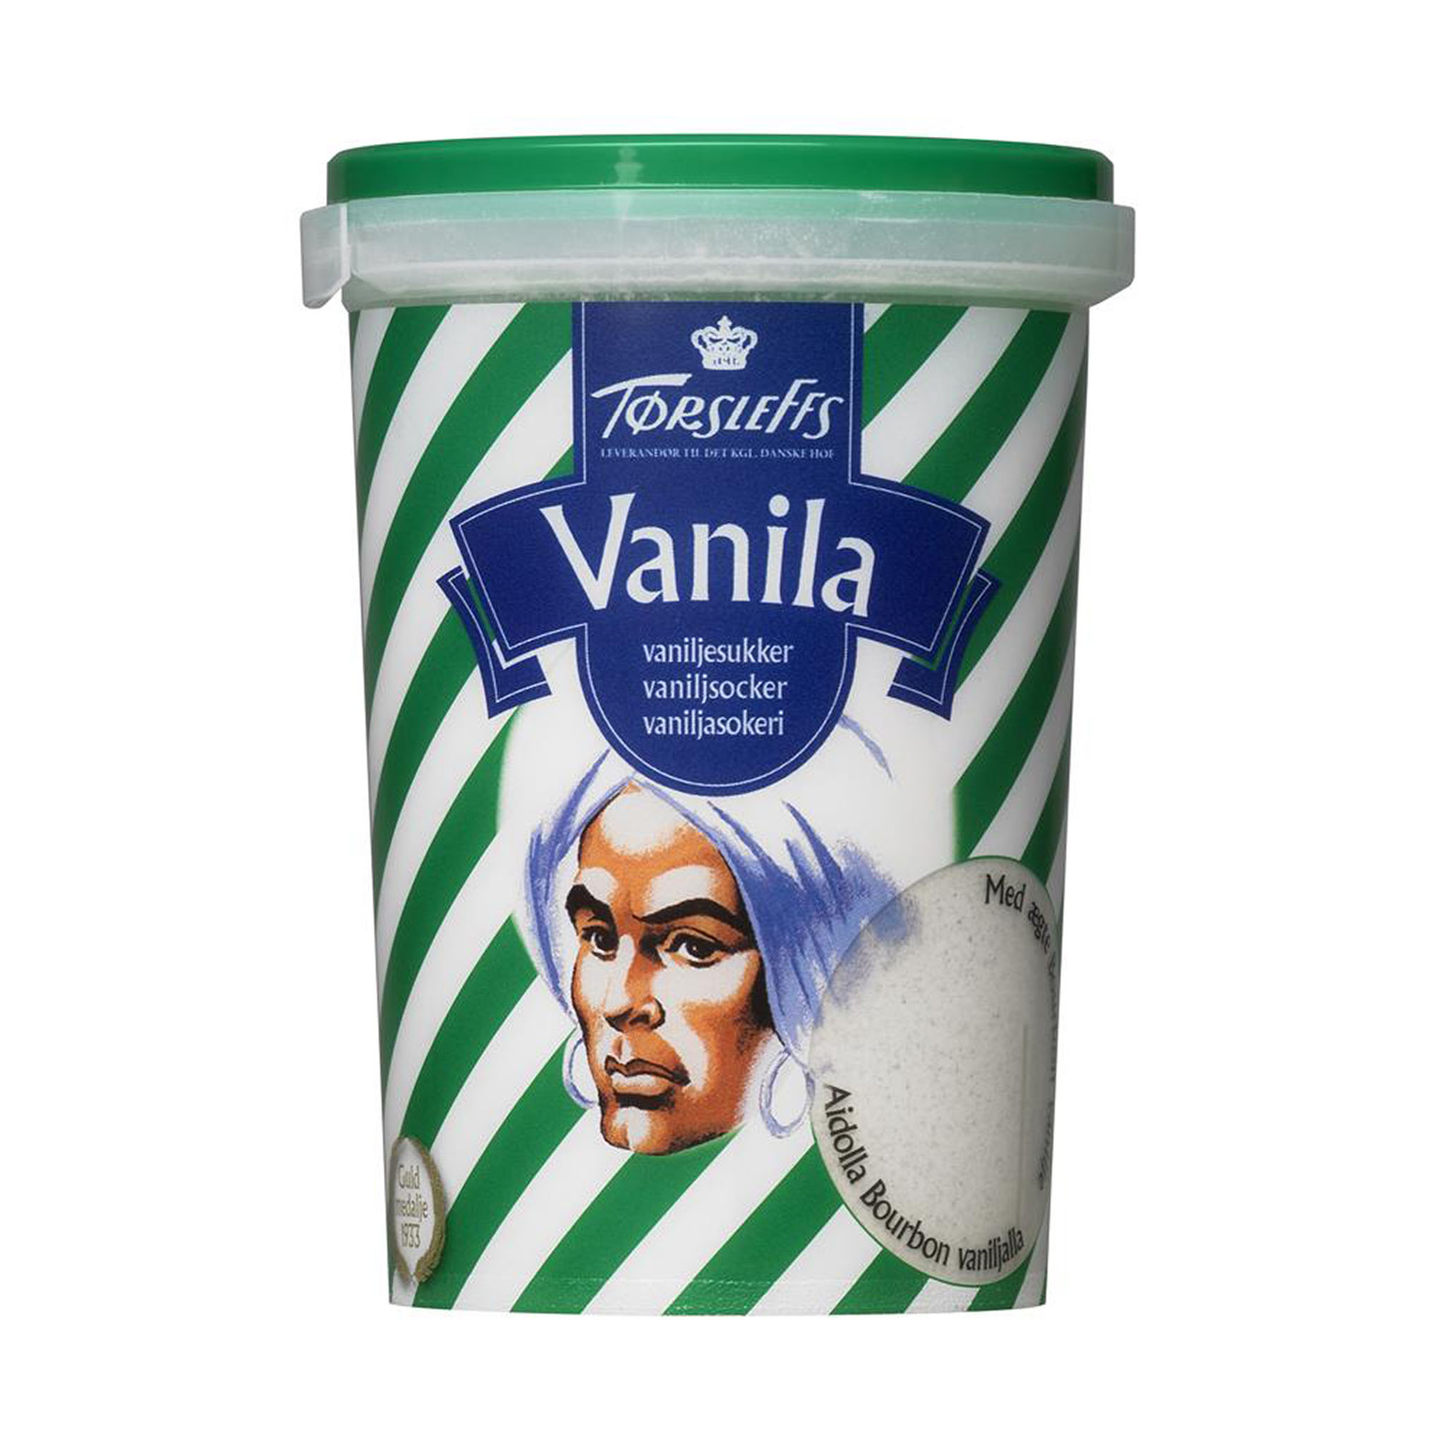 Vanilla powder 100g net